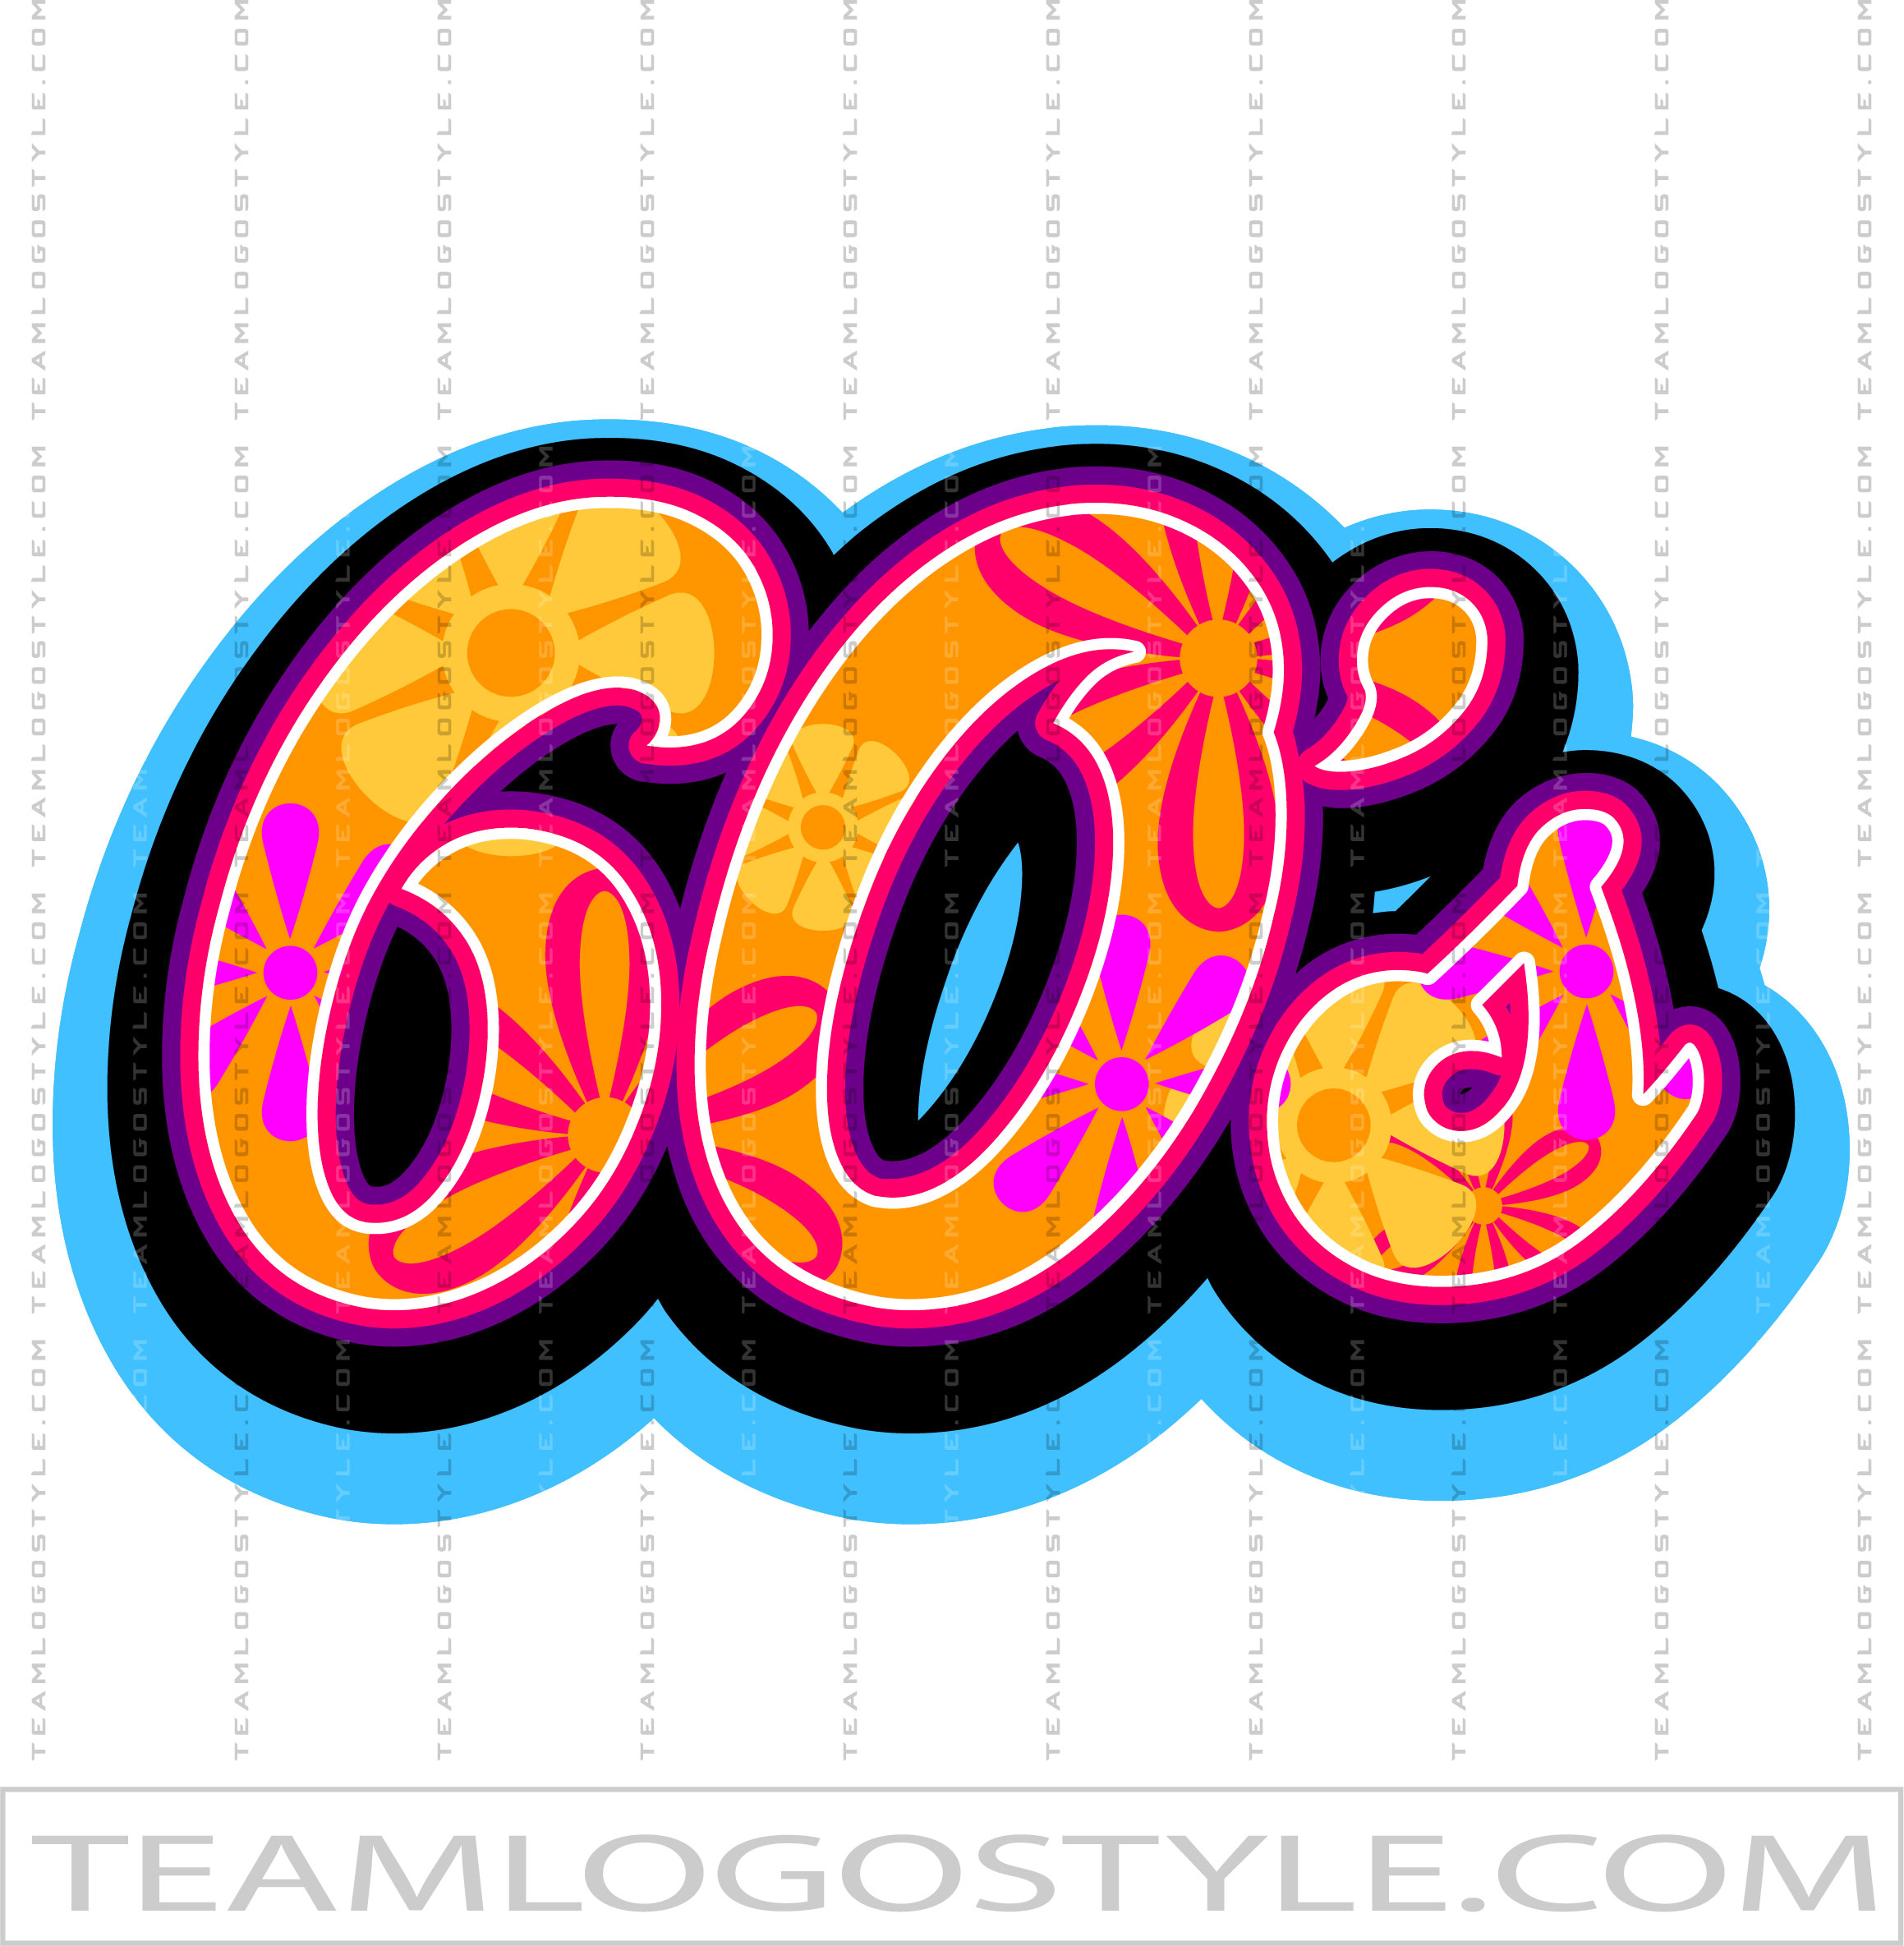 60s logo